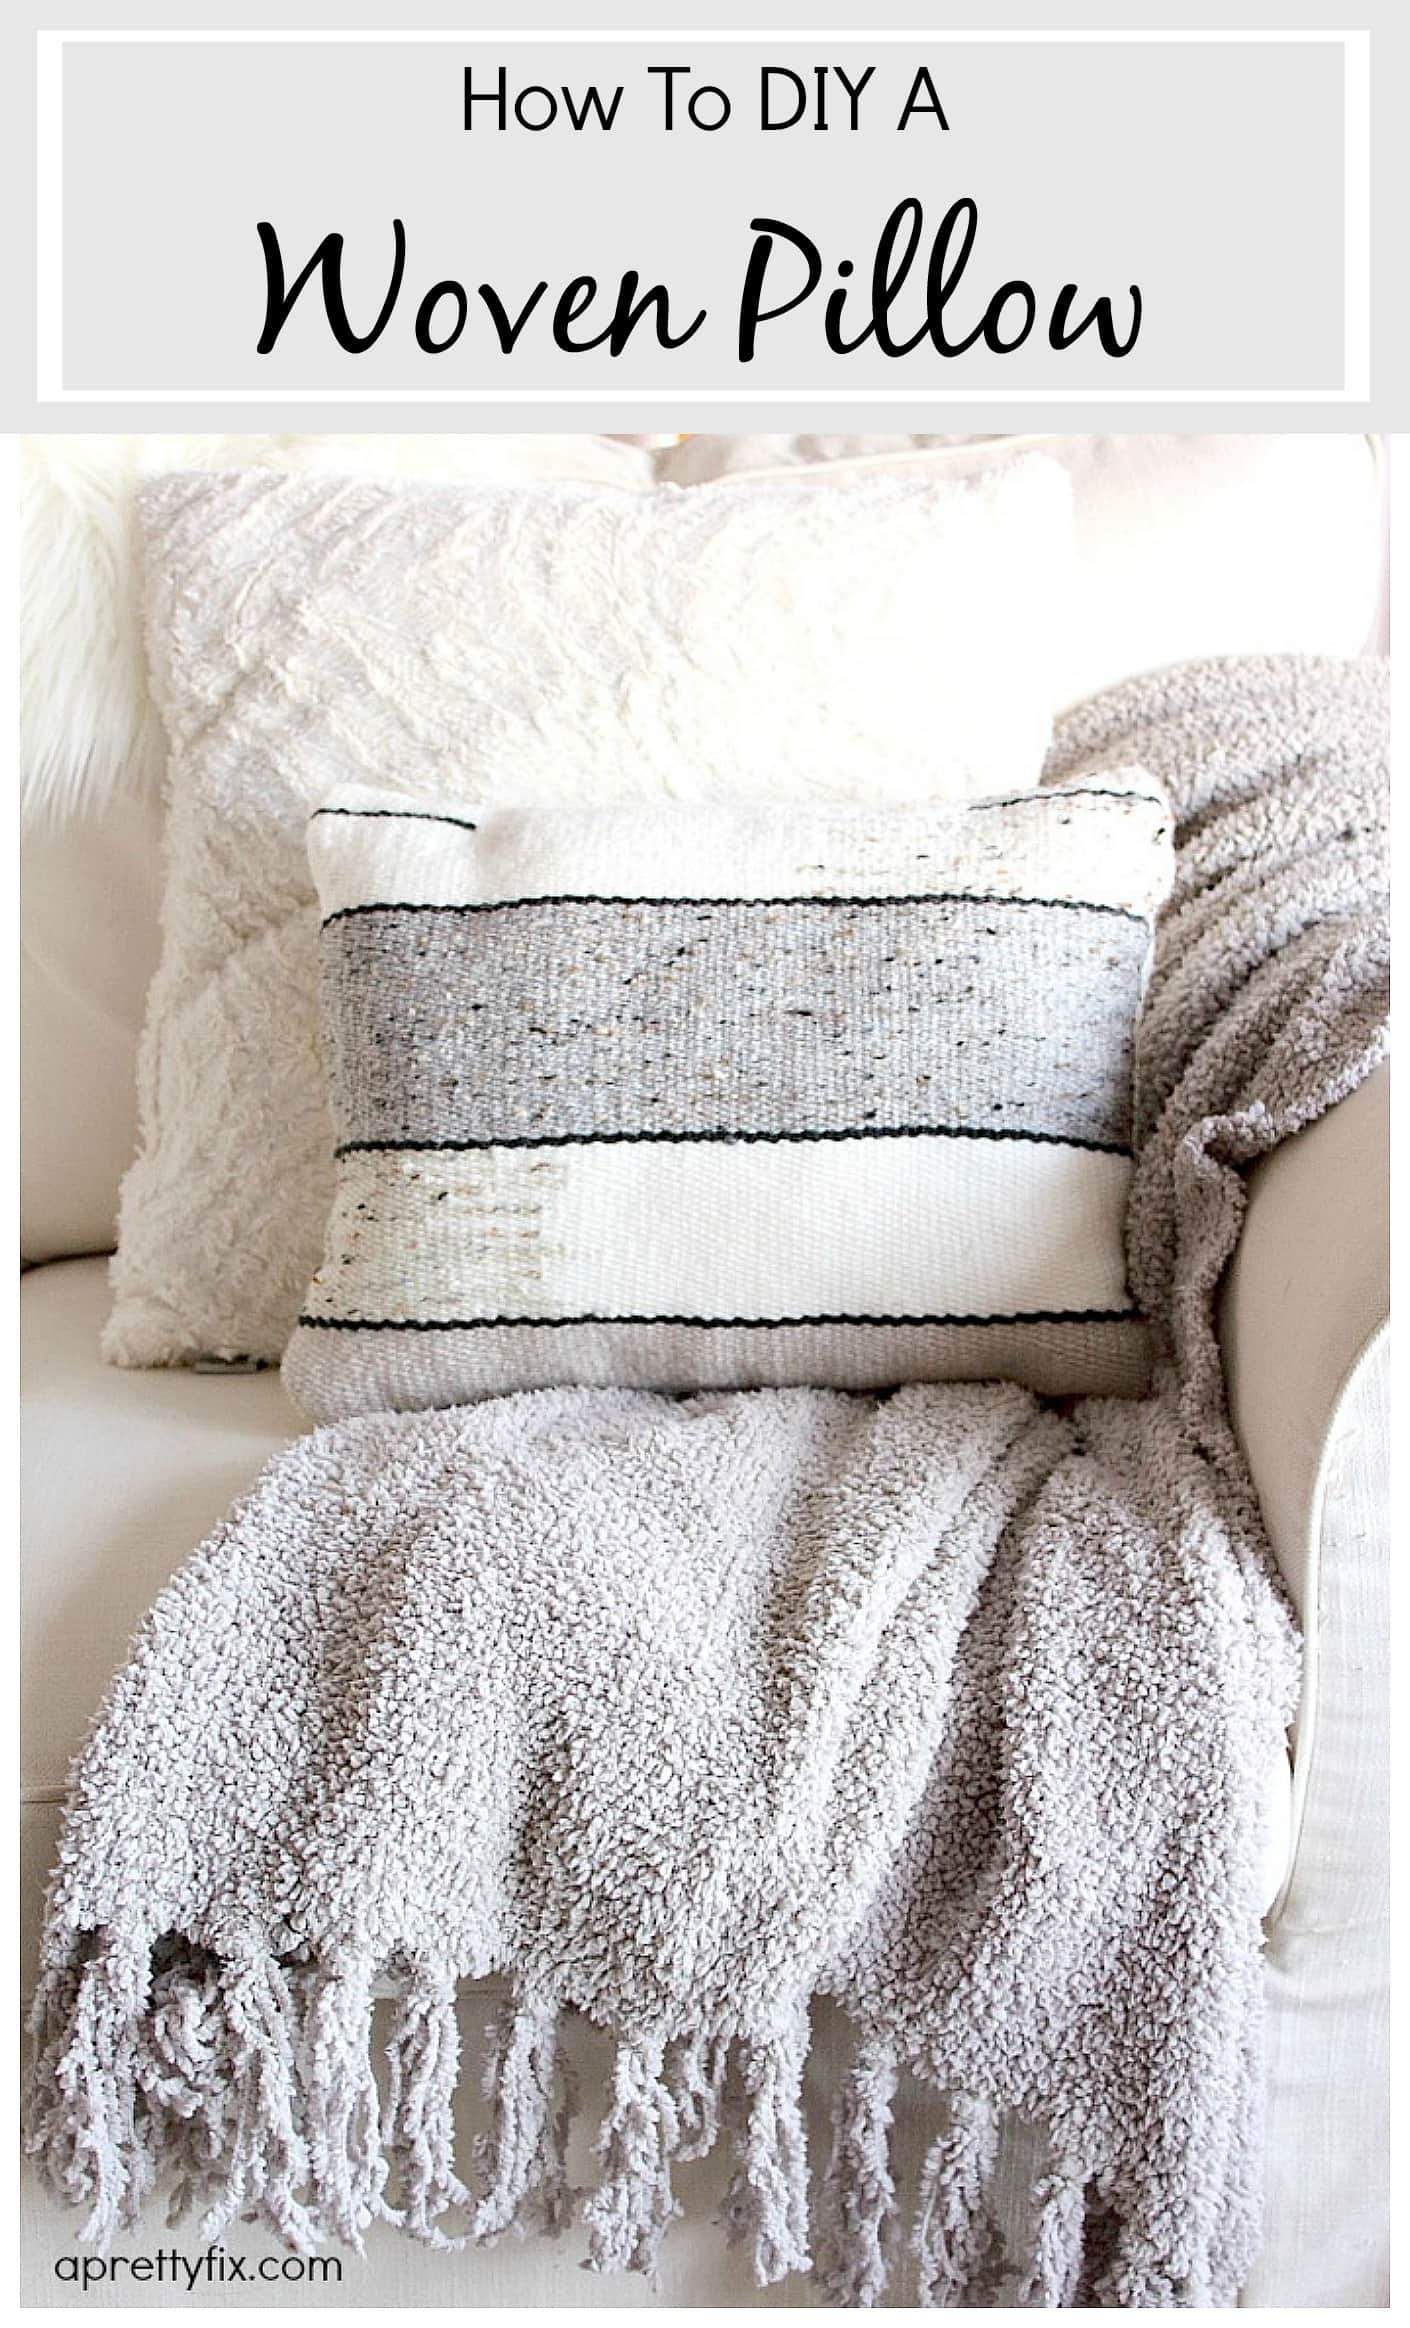 DIY Woven Pillow